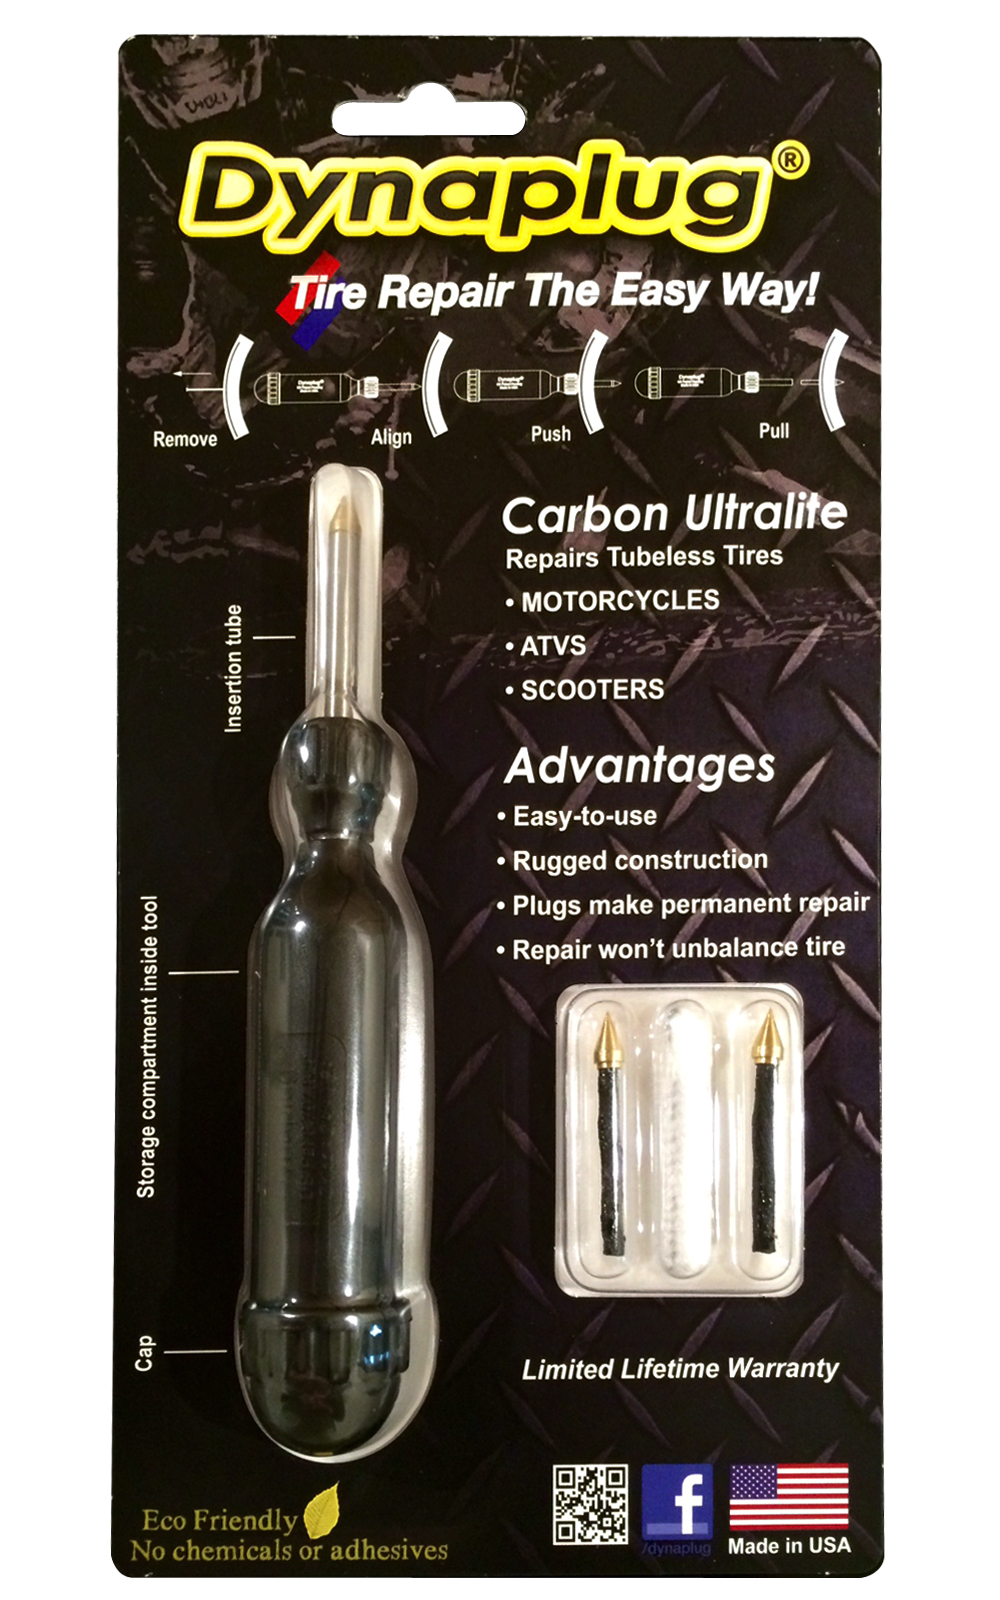 carbon ultralite tool in packaing.jpg